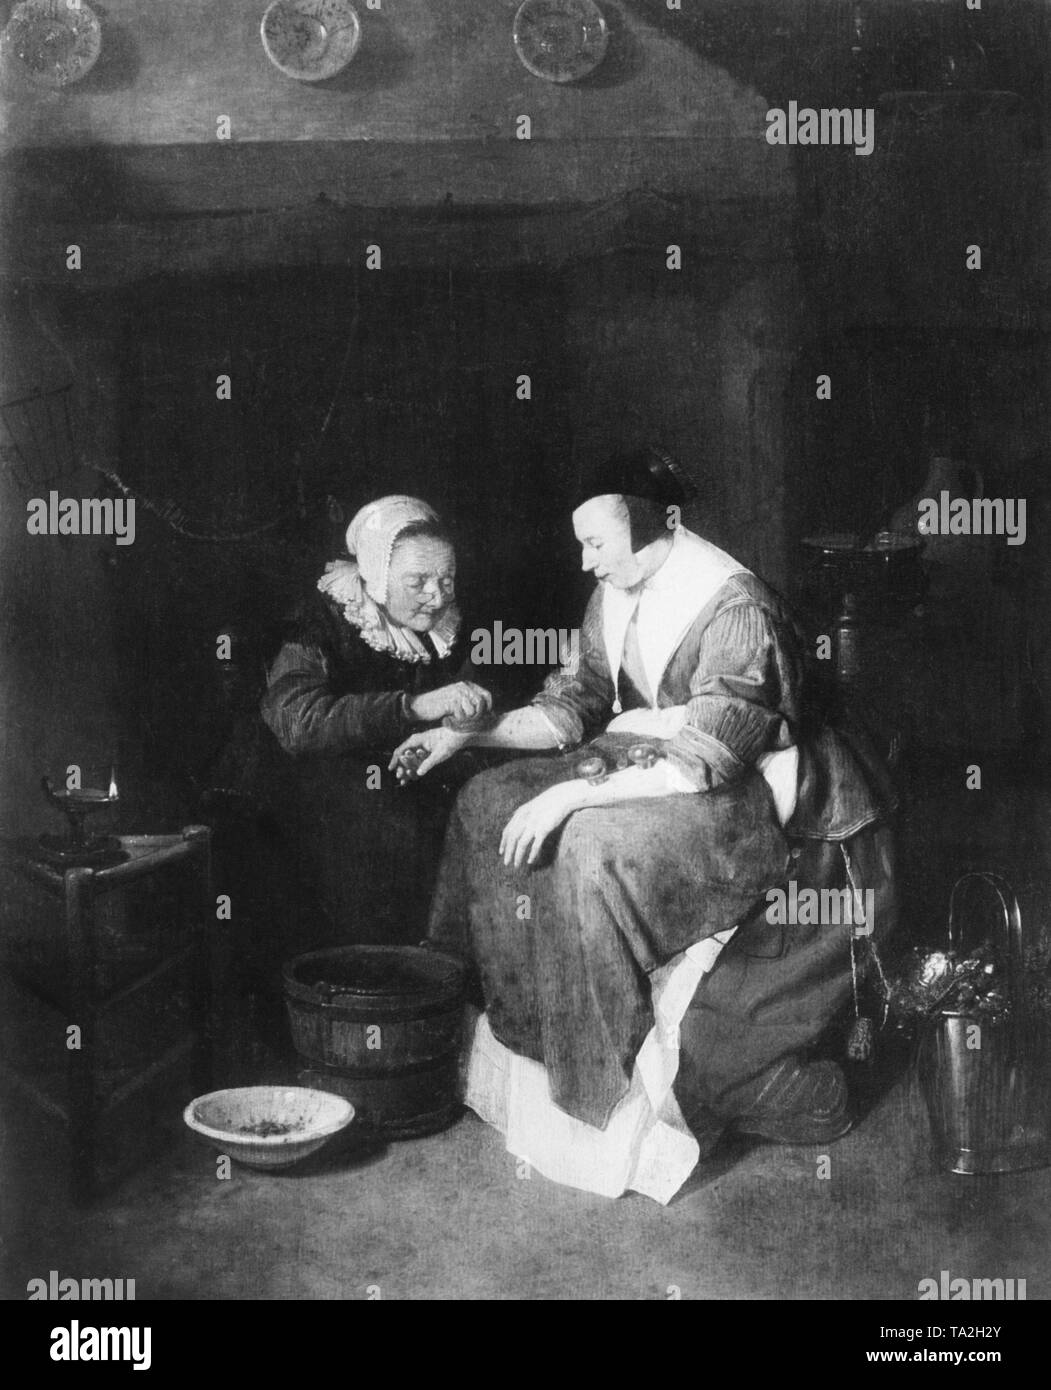 Une femme malade est traité avec ventouses. La peinture a été faite par le peintre néerlandais Quiringh van Brekelenkam. Photo non datée, vers 1650. Banque D'Images